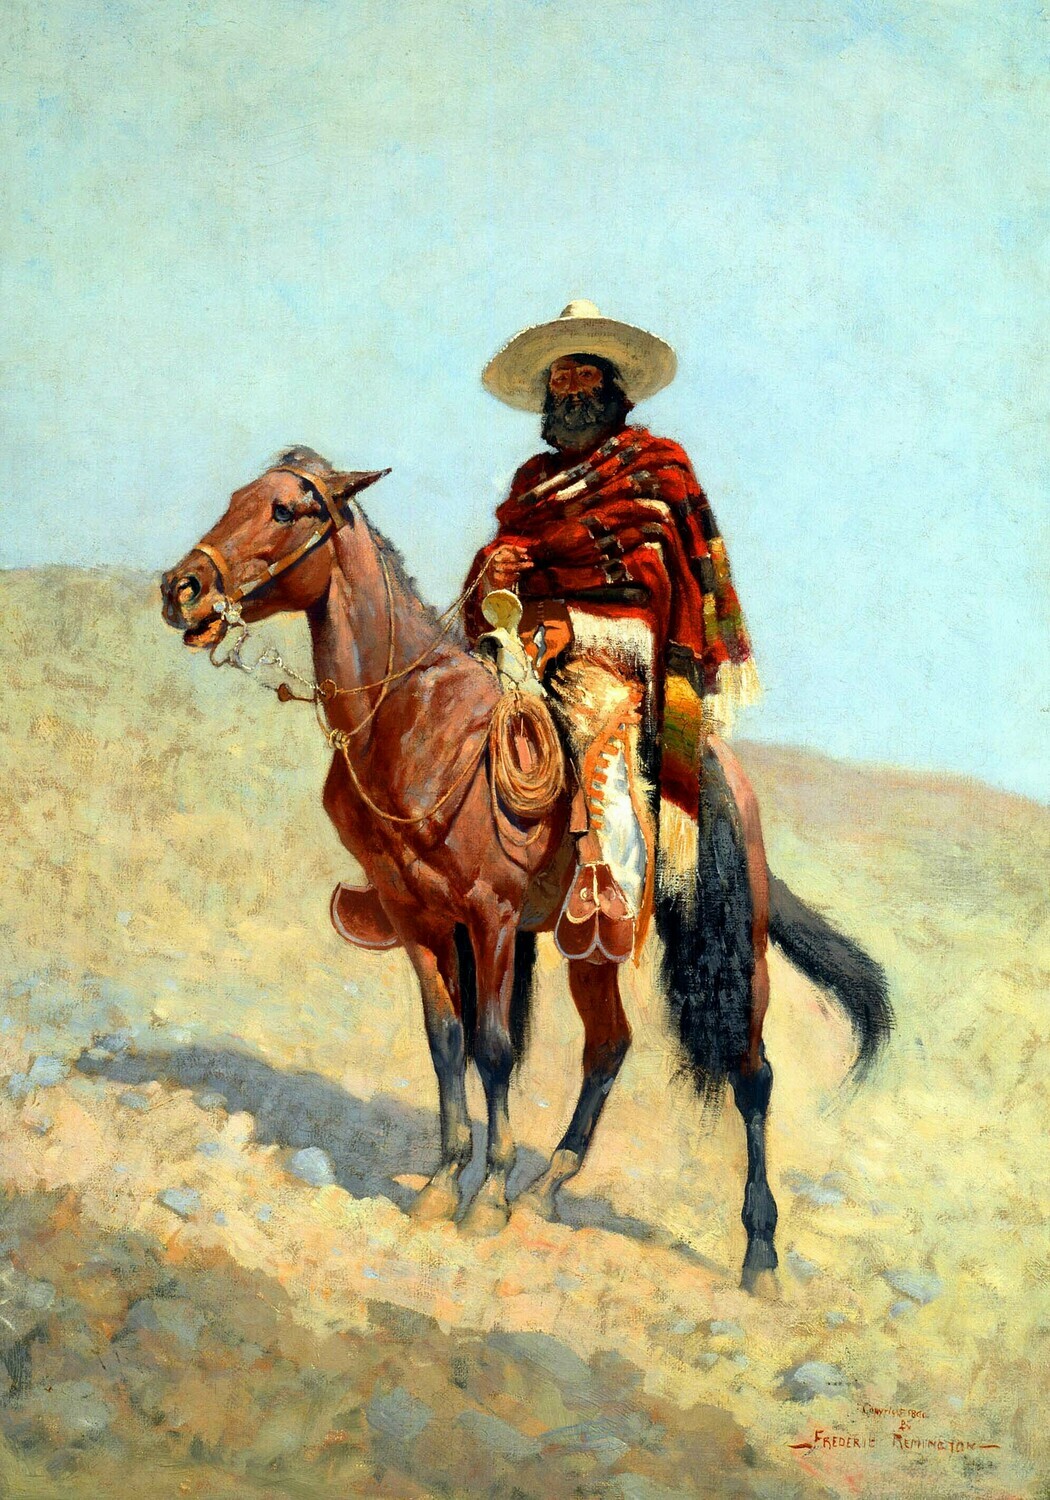 Frederic Remington | A Mexican Vaquero 1890